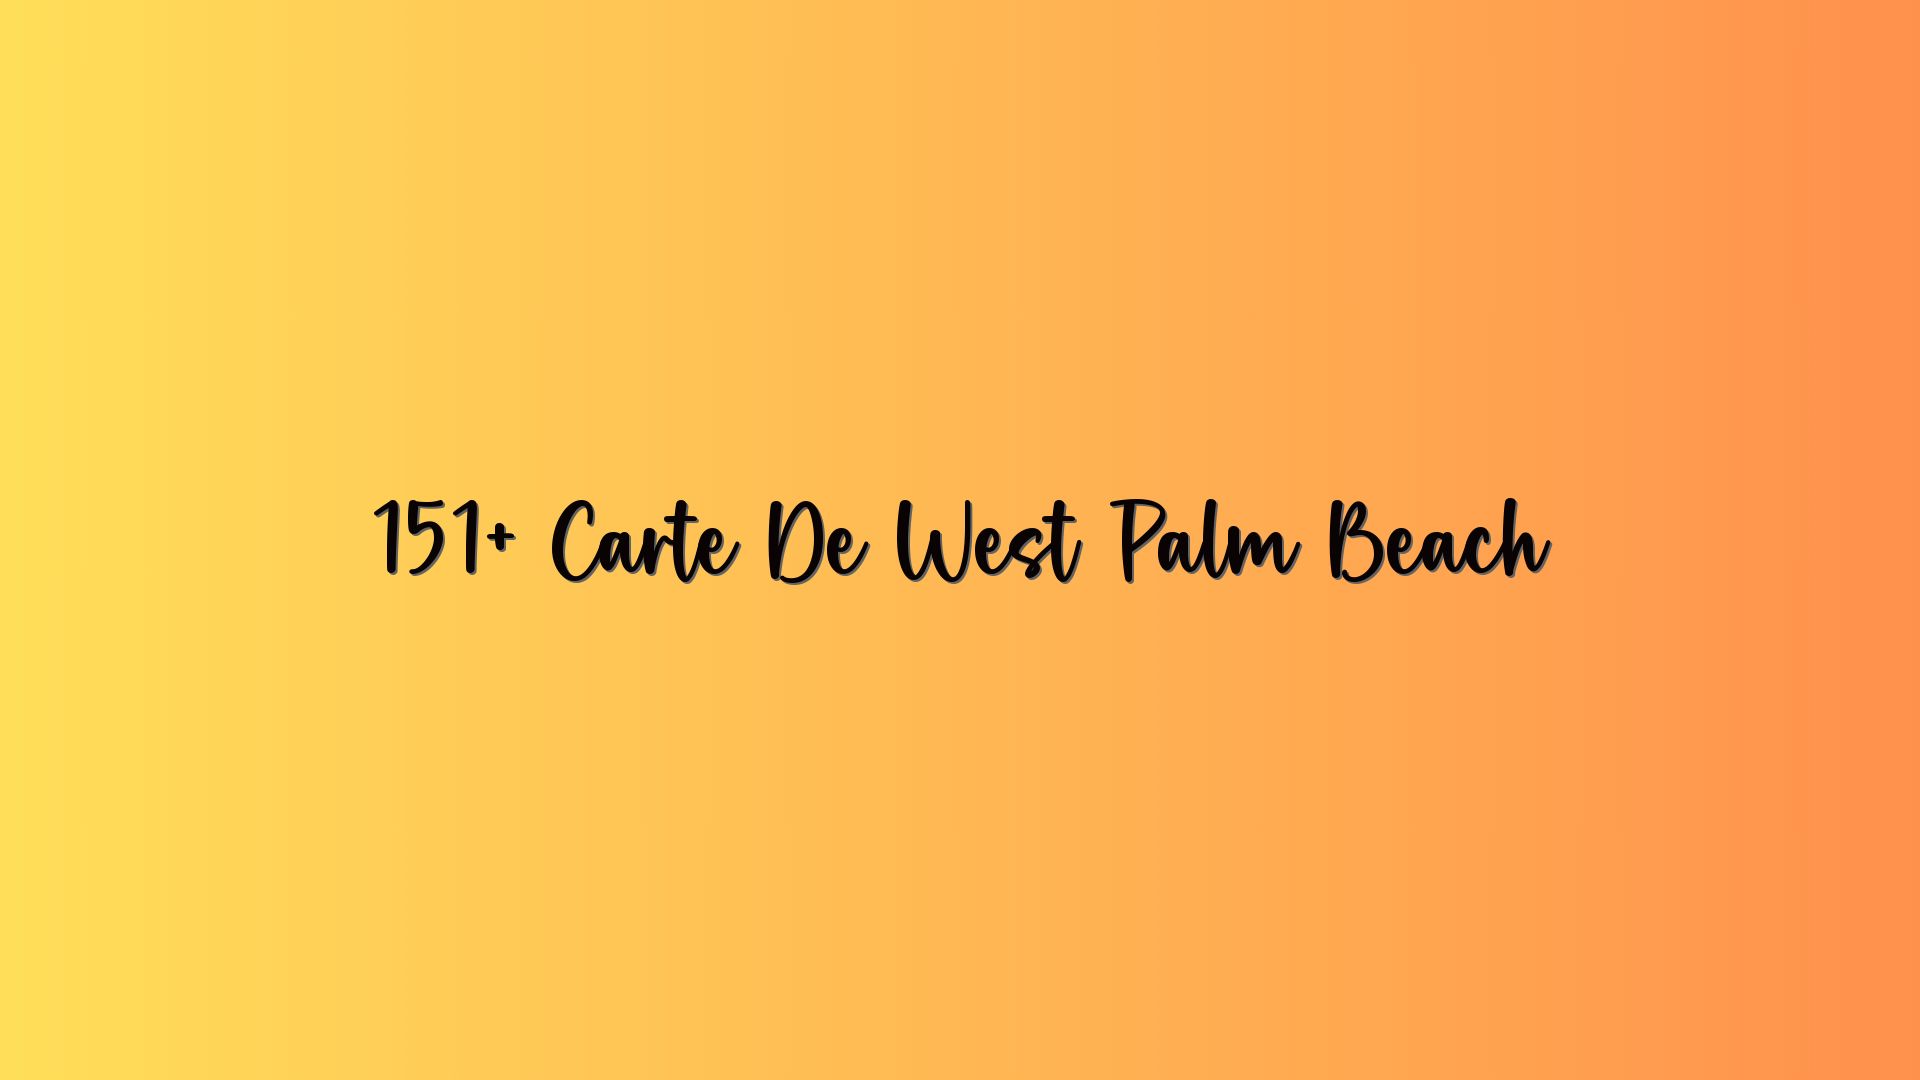 151+ Carte De West Palm Beach